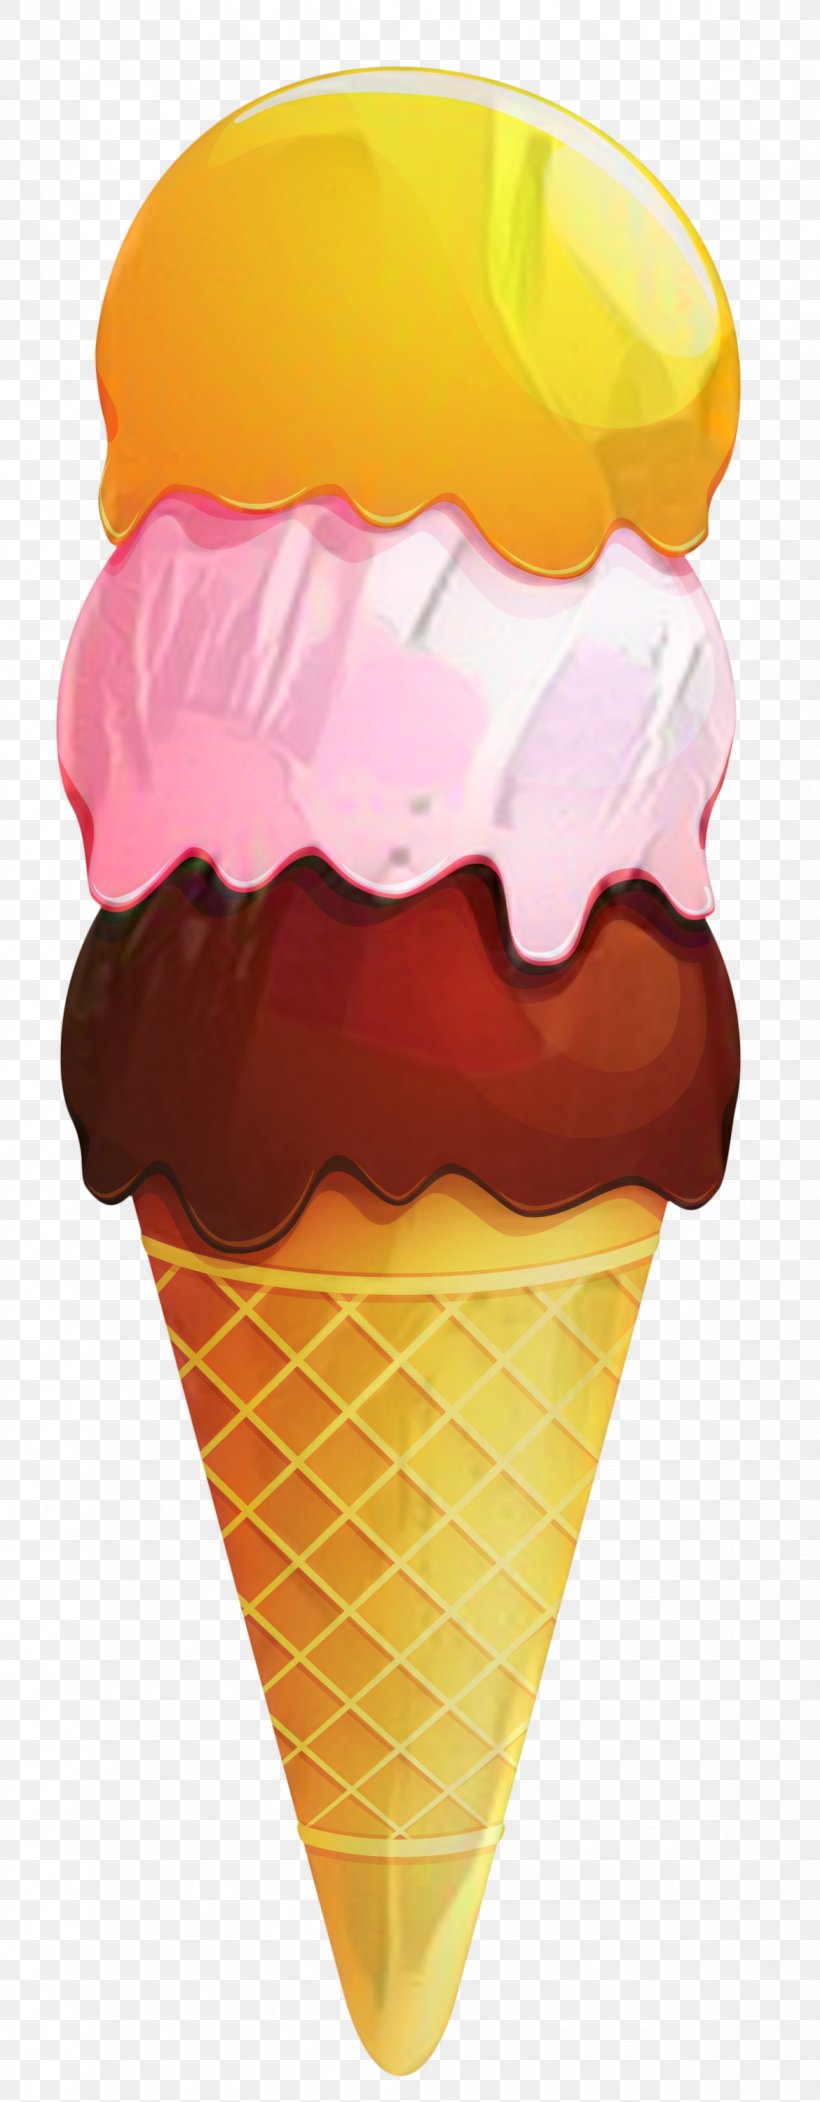 Ice Cream Cones Neapolitan Ice Cream Italian Ice, PNG, 1170x3000px, Ice Cream, Baking Cup, Chocolate Ice Cream, Cone, Cream Download Free